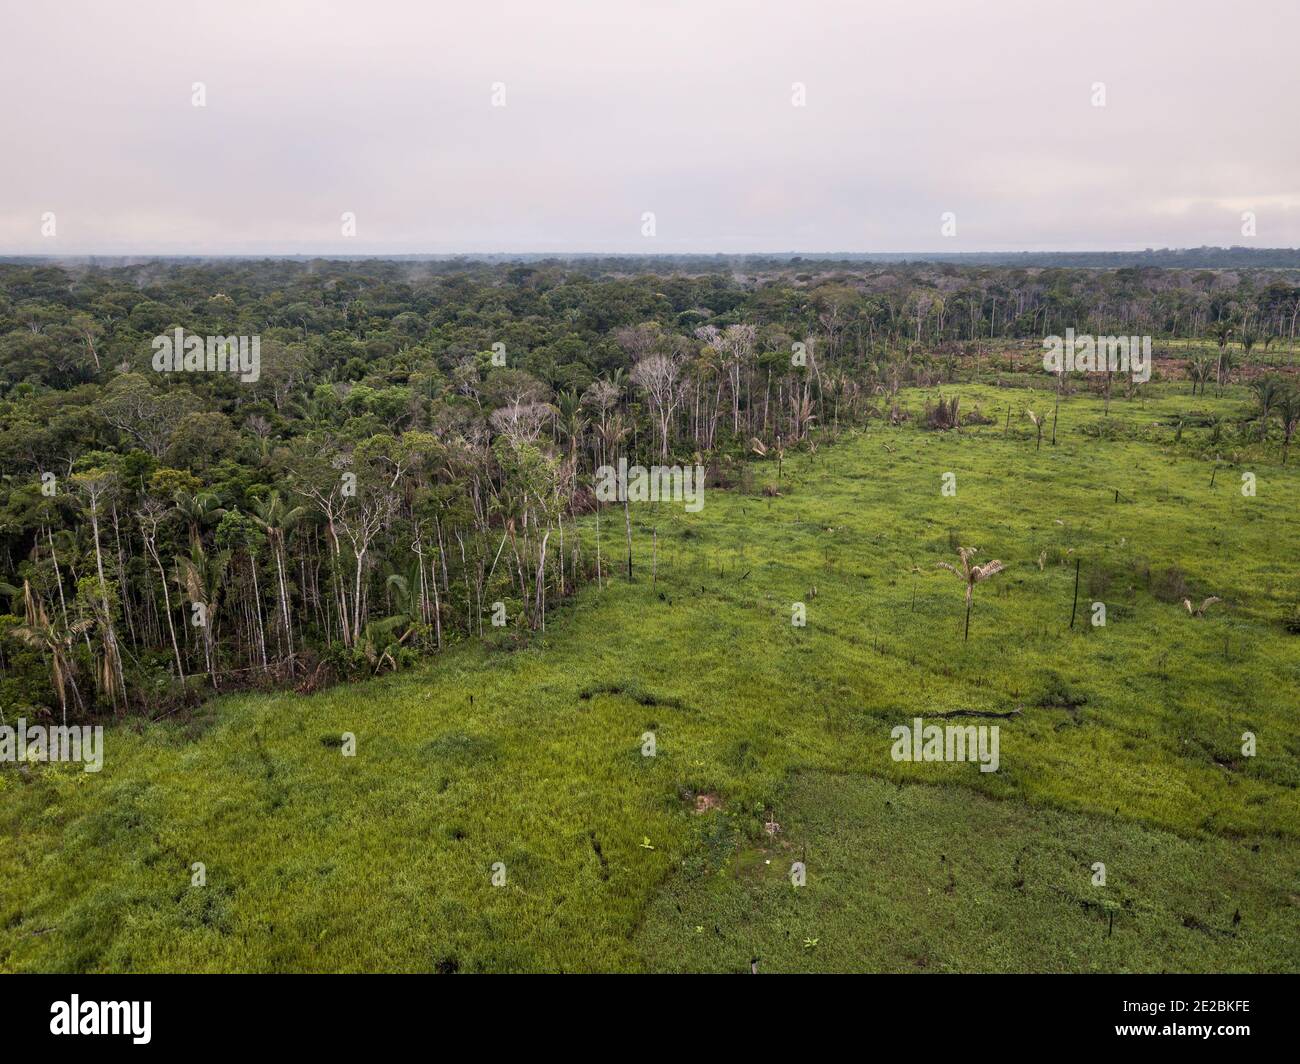 Entwaldete Fläche, um Gras zu Pflanzen und Weide für Rinderfarmen im Amazonas-Regenwald, Brasilien. Konzept der Ökologie, Entwaldung, Erhaltung. Stockfoto